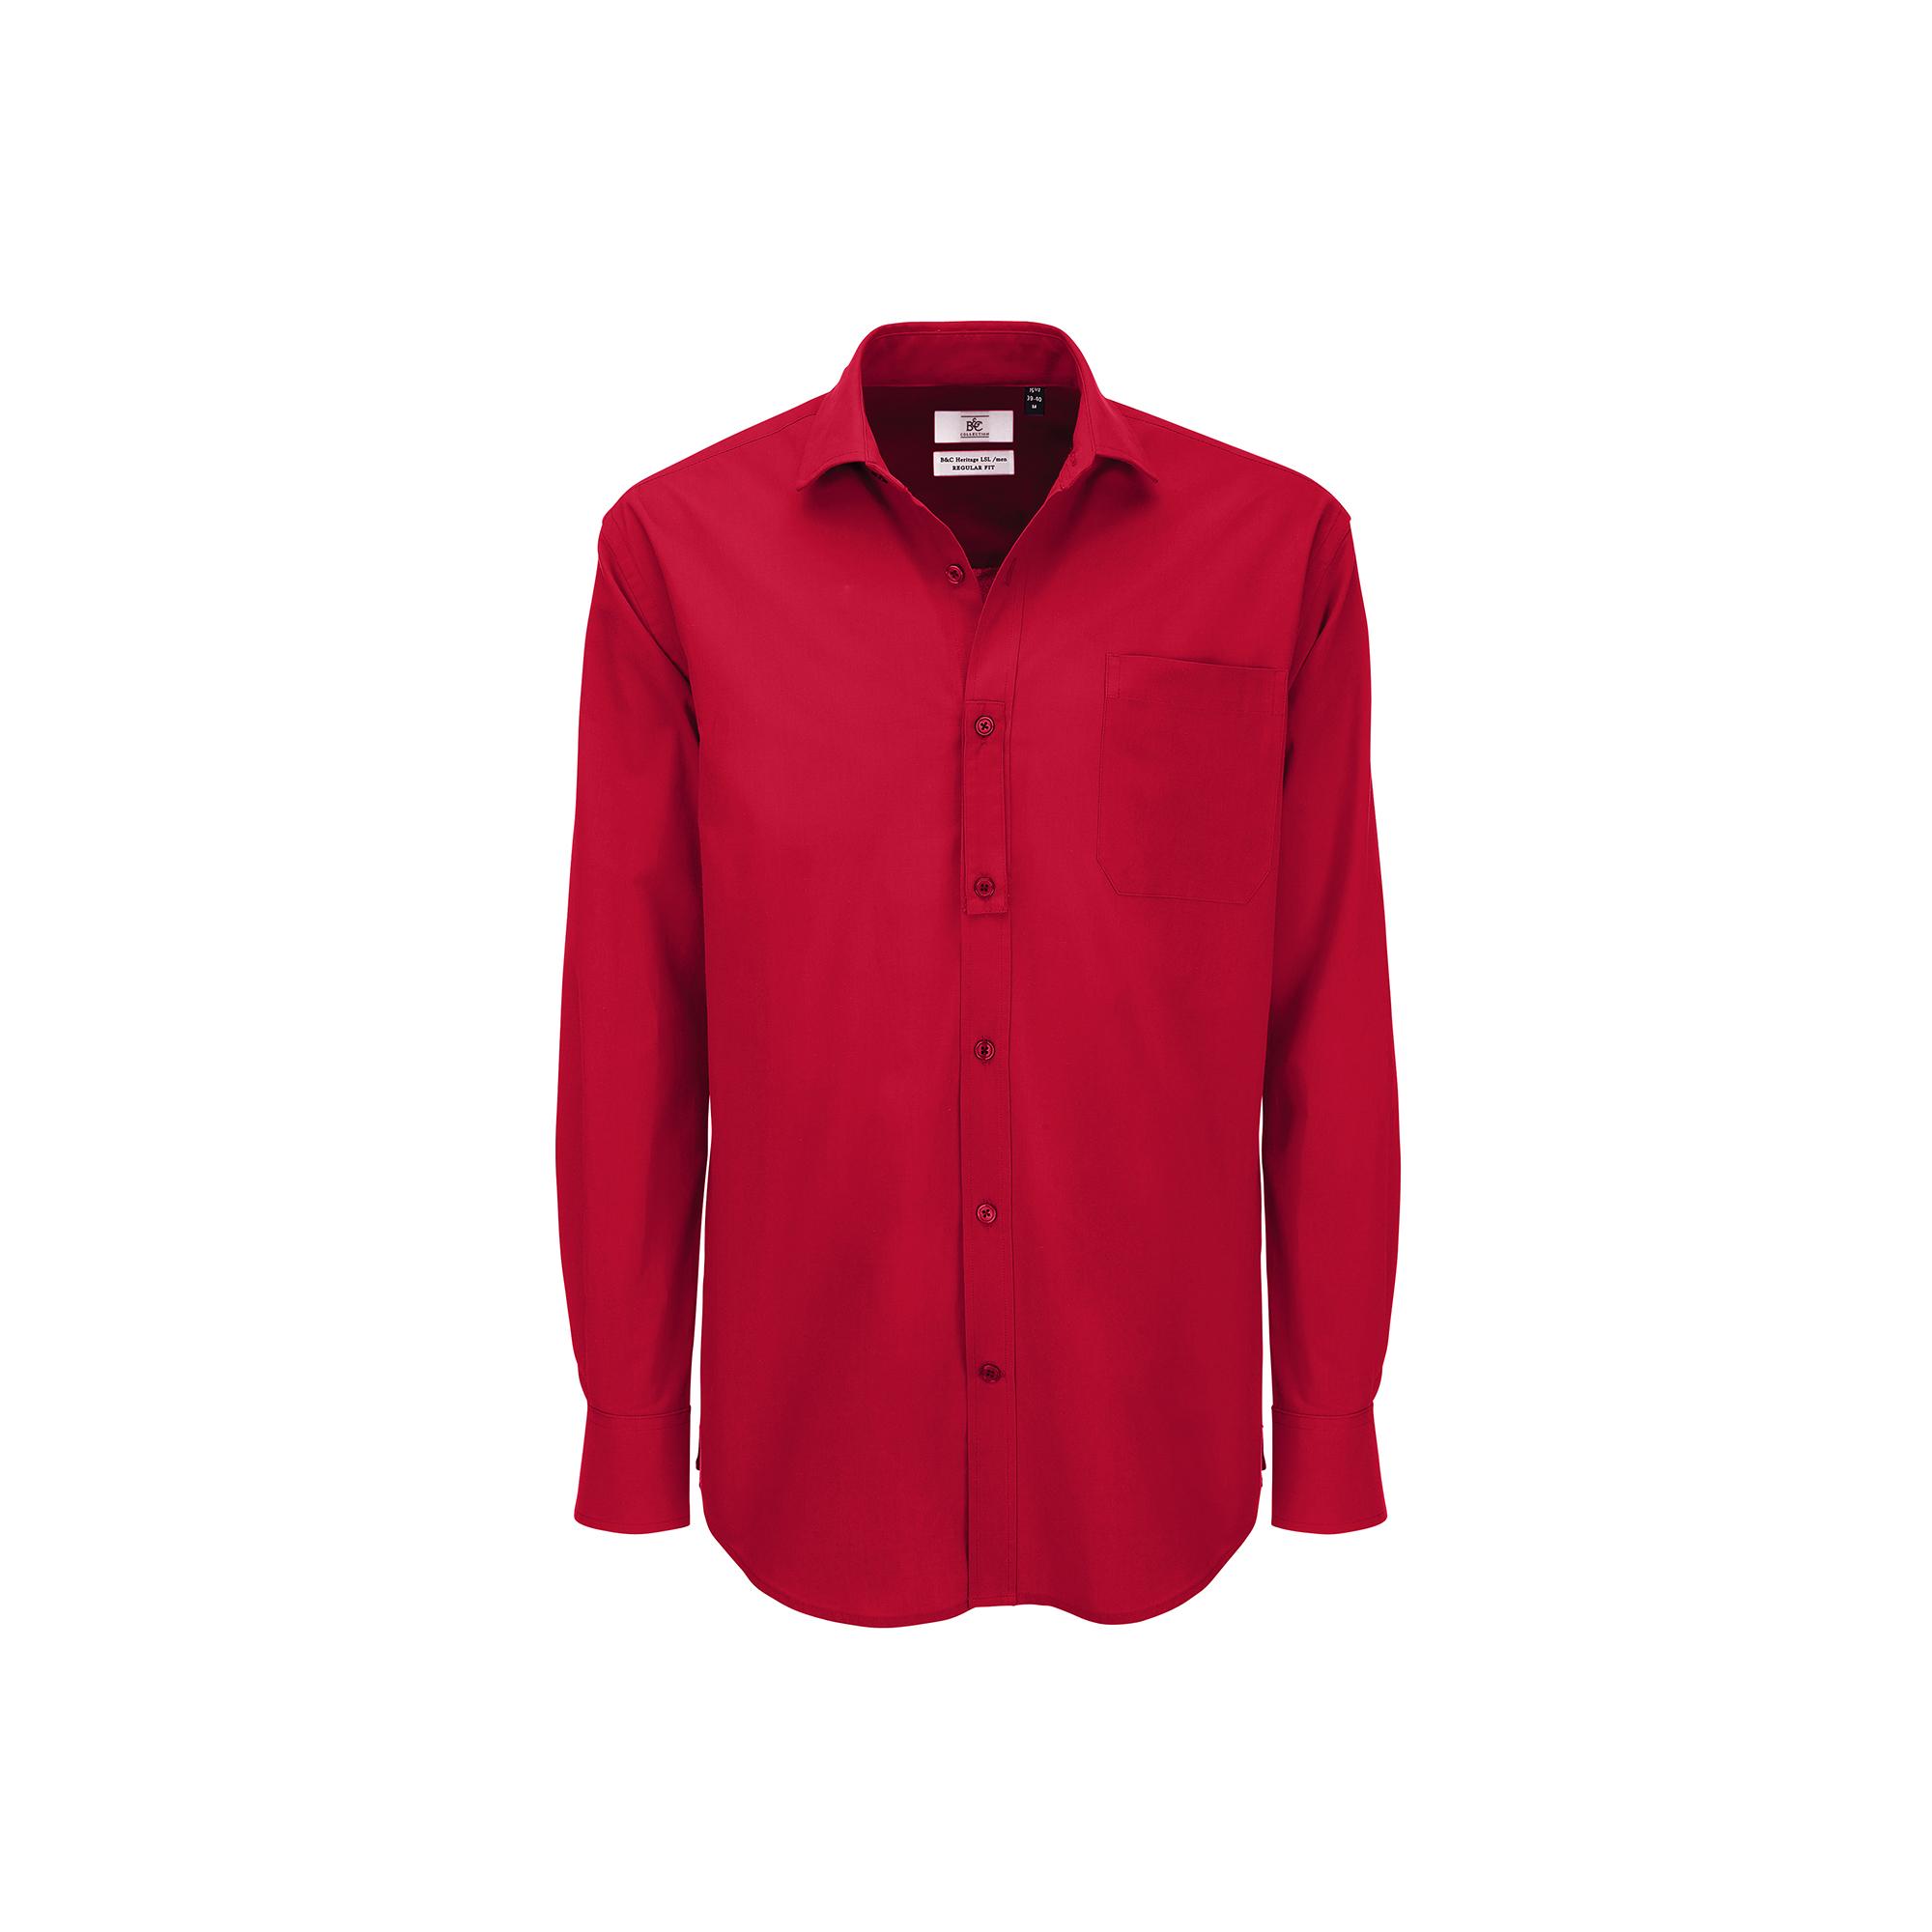 Рубашка мужская с длинным рукавом Heritage LSL/men, цвет темно-красный, фото 1